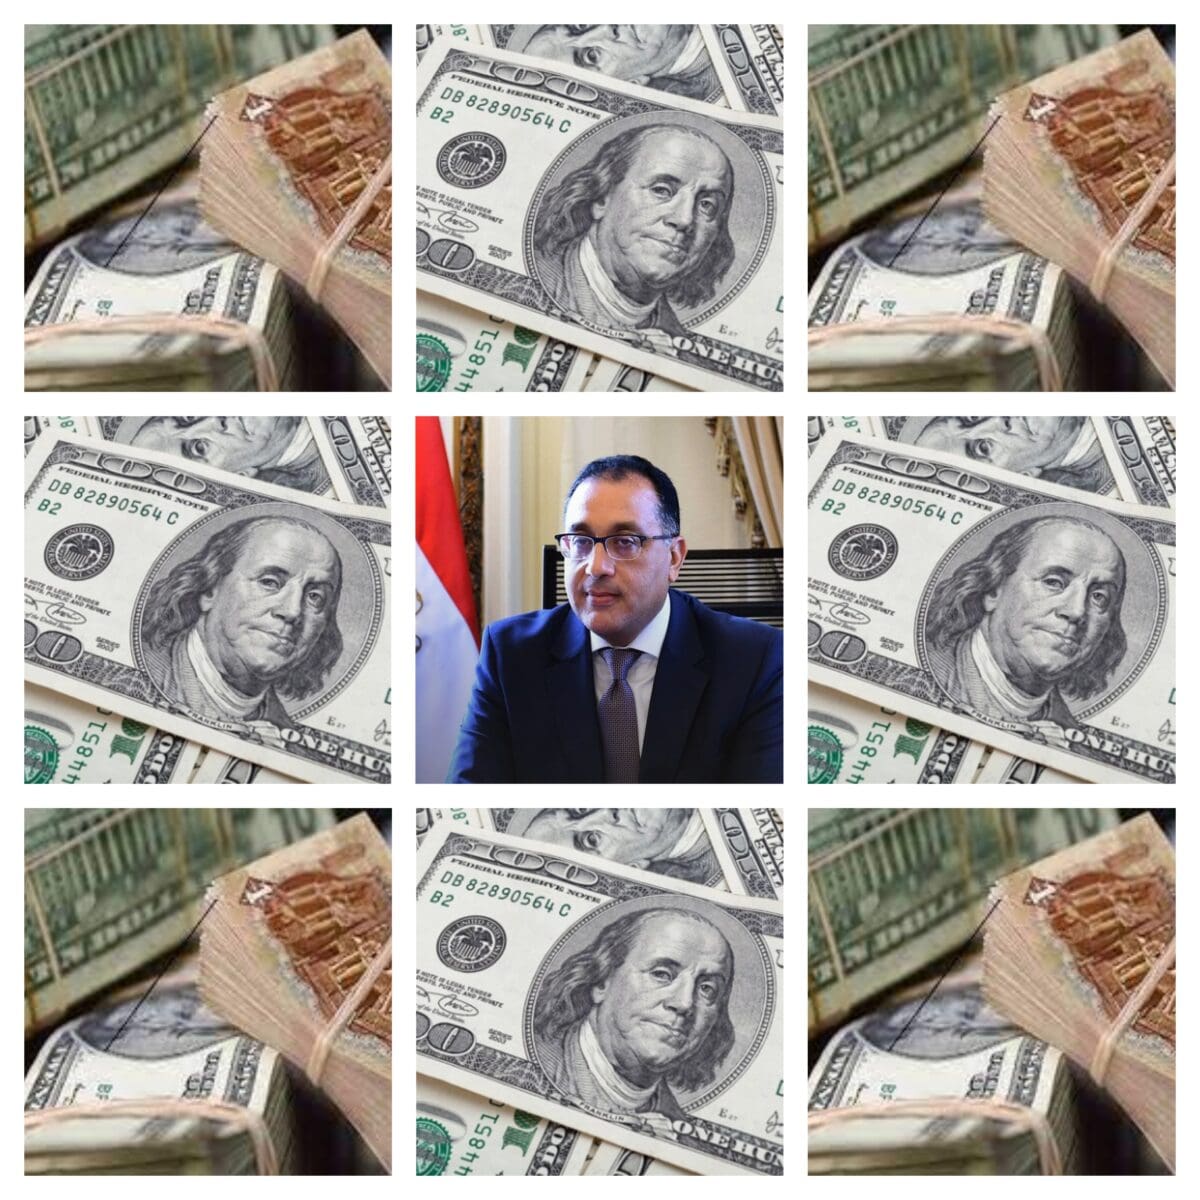 رئيس مجلس الوزراء - مصدر الصورة: تصميم لموقع نجوم مصرية